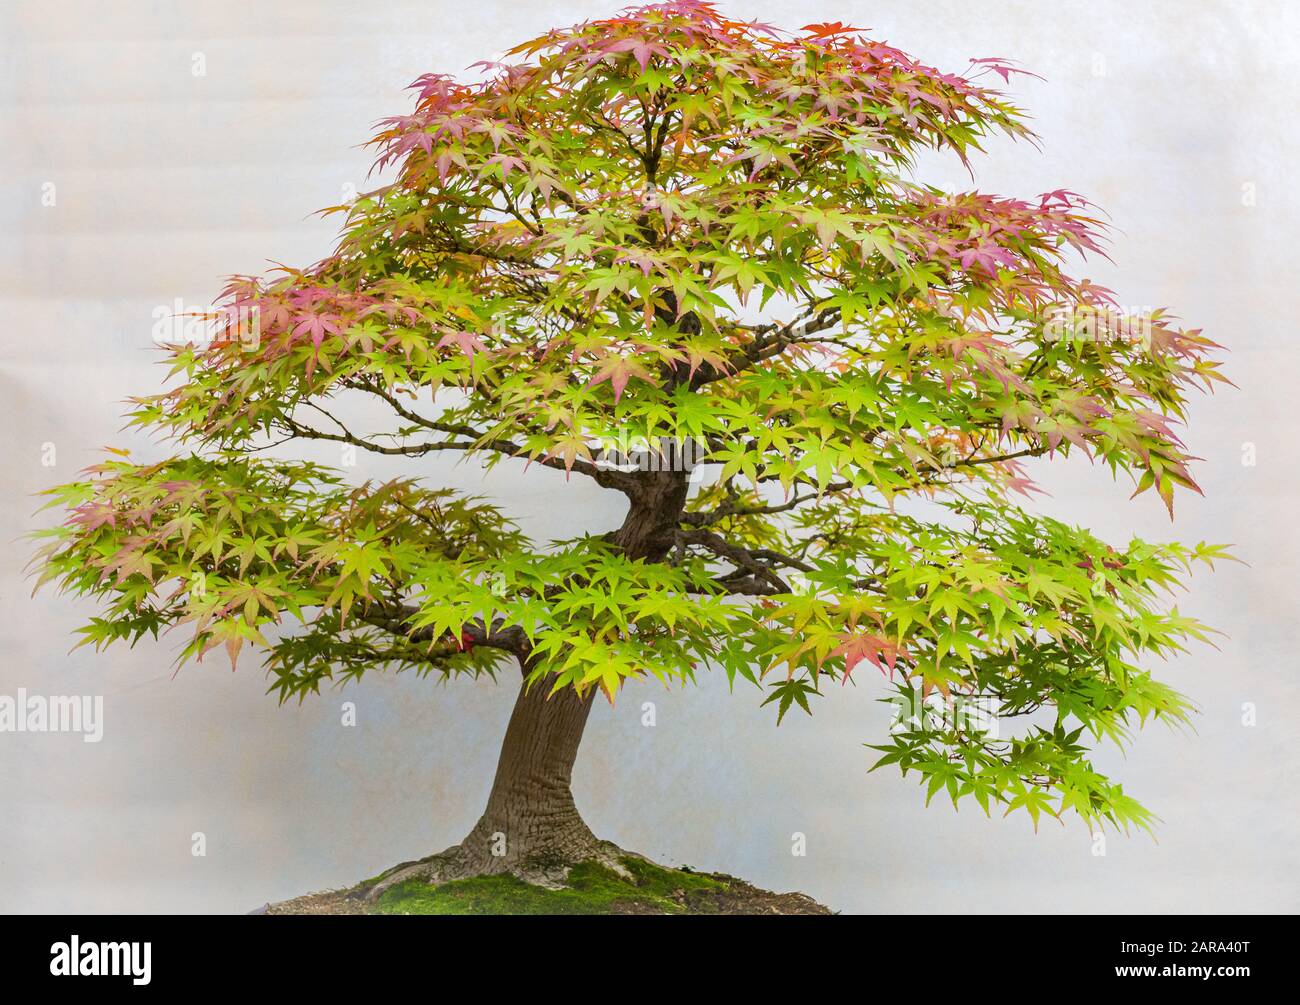 Ein kleiner Bonsai-Baum in einem Keramiktopf. Acer Palmatum. Bonsai japanischer Ahorn-Baum. Herbstfarben Stockfoto